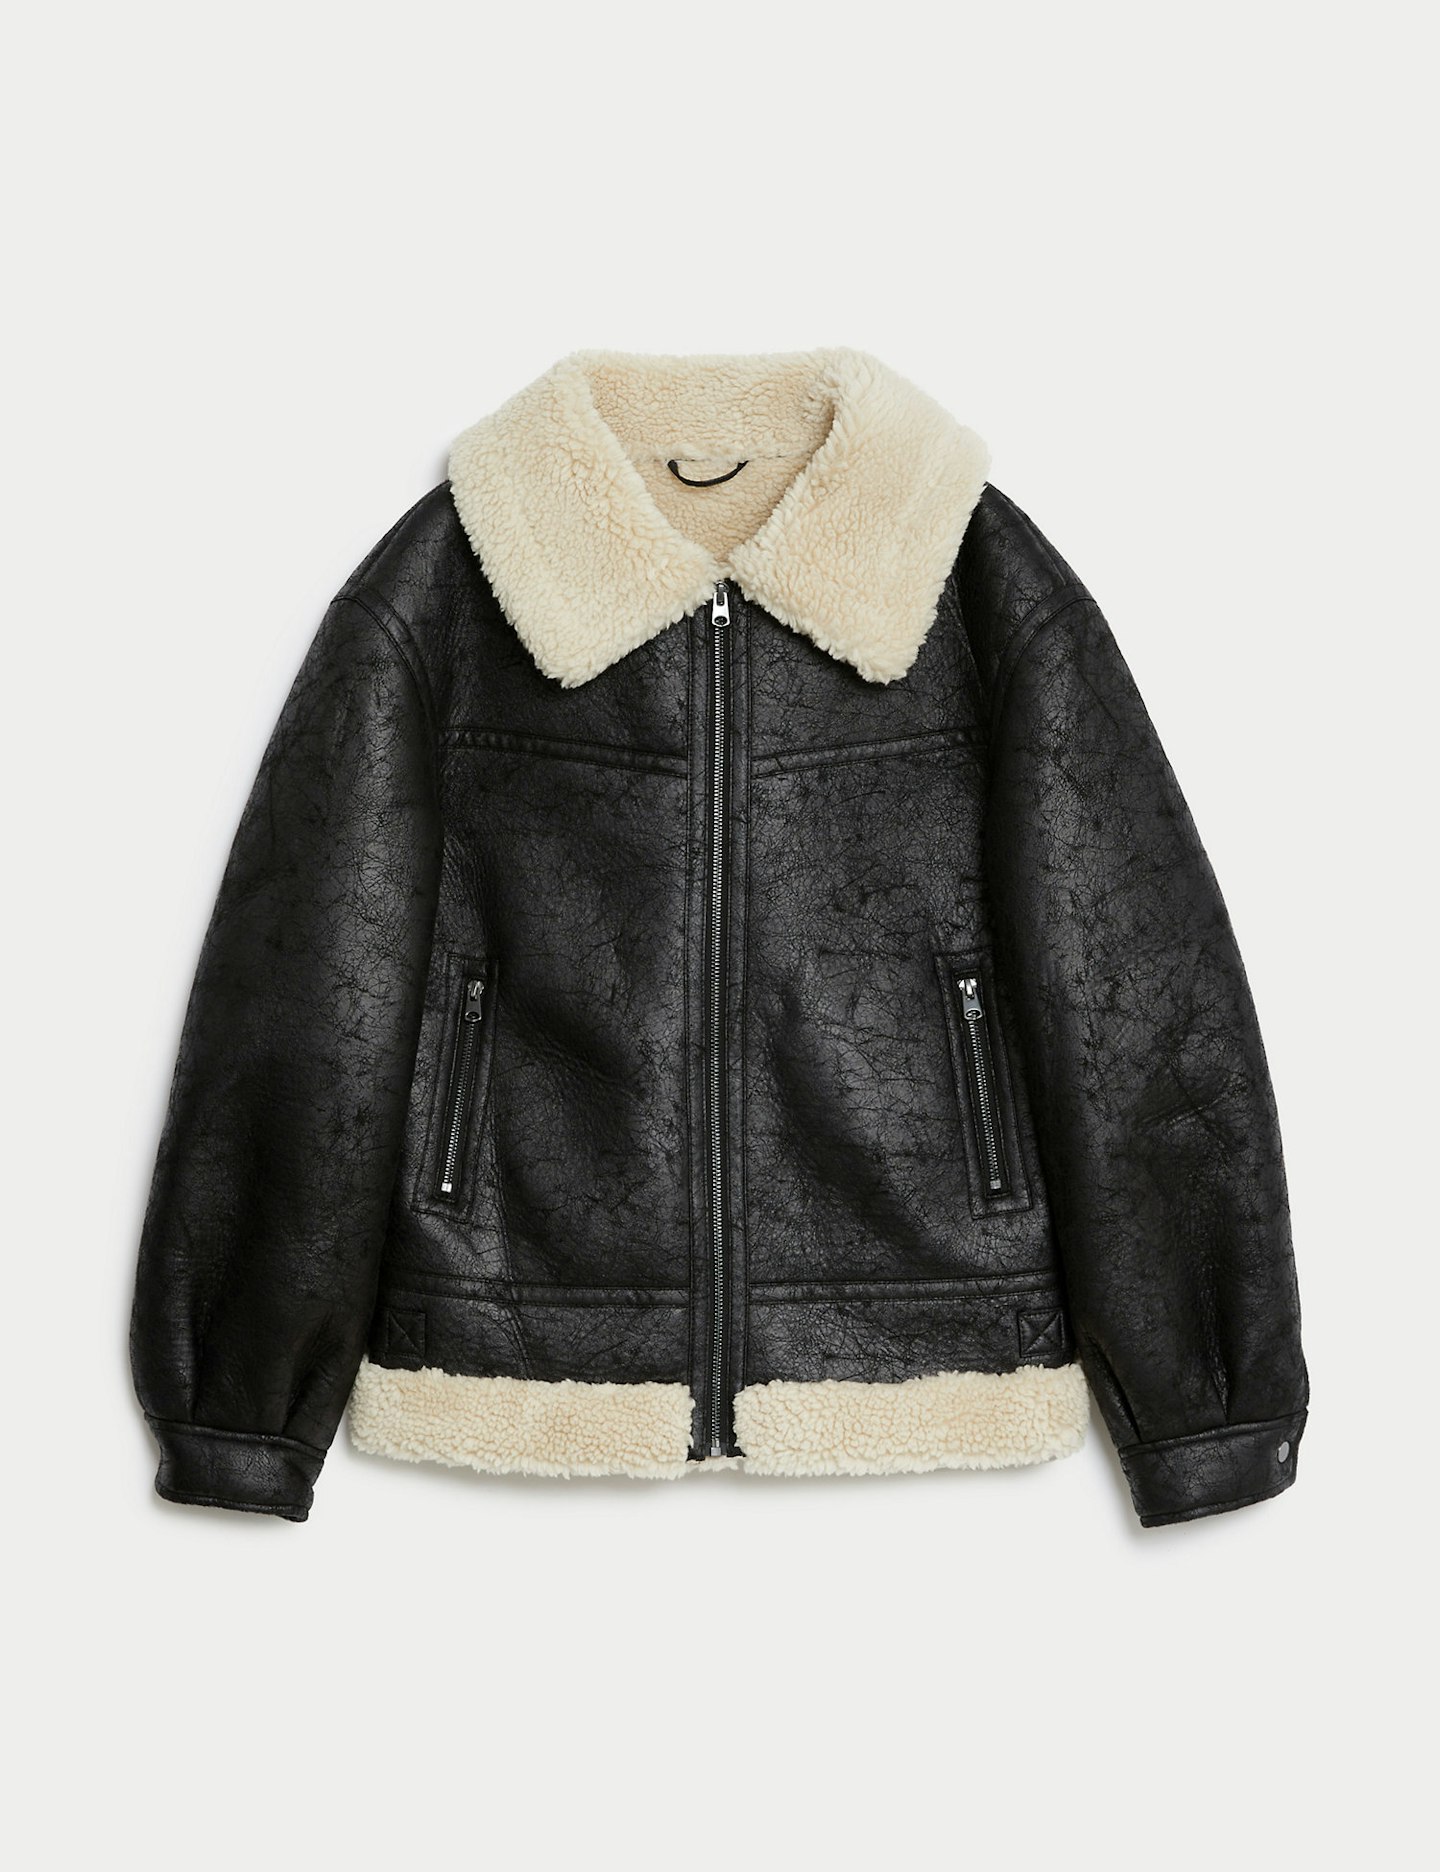 Sienna Miller M&S jacket